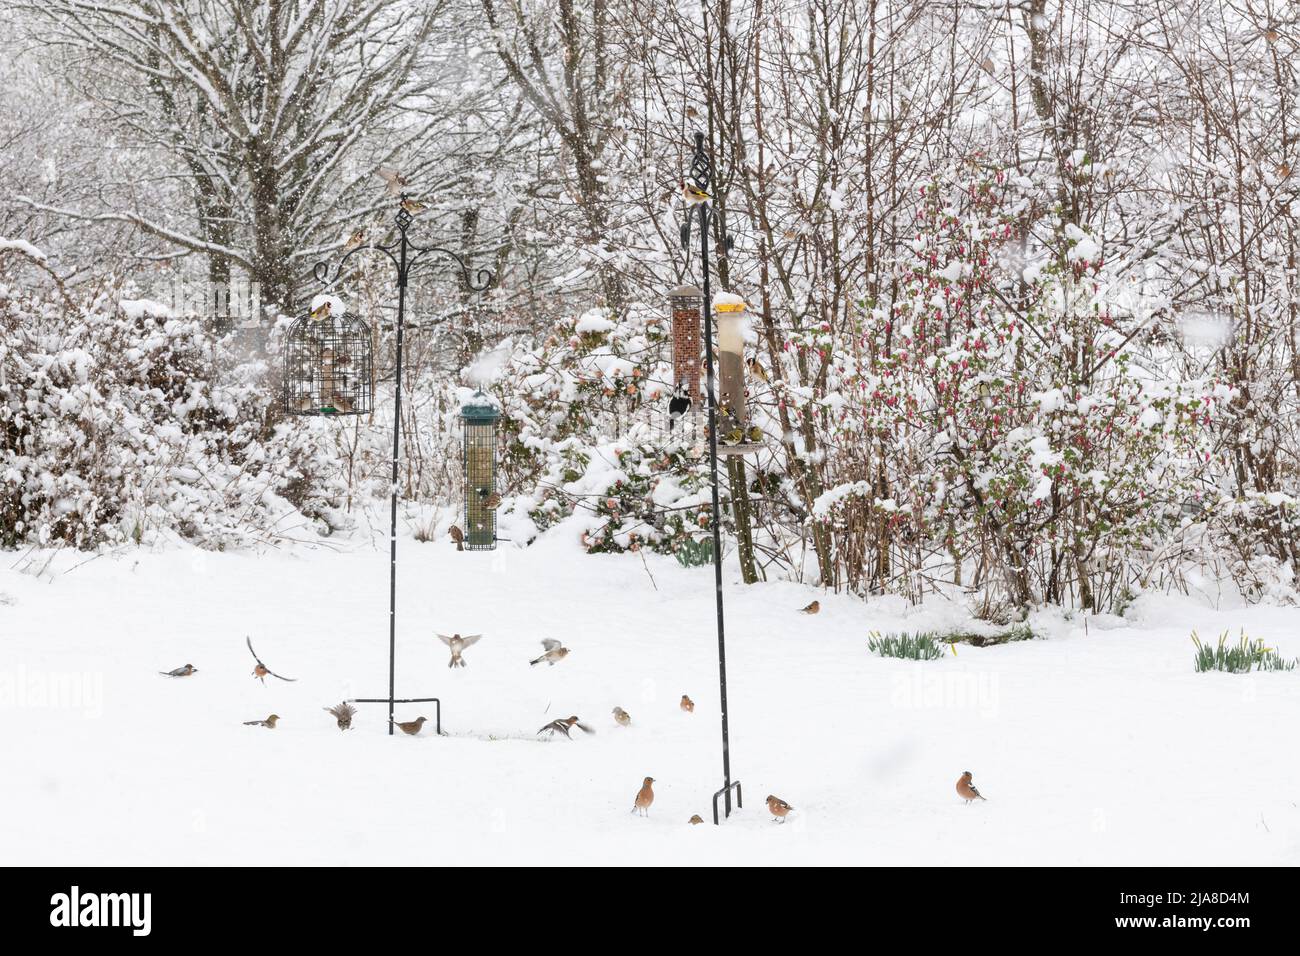 Verschiedene Gartenvögel (Goldfinken, Baumspatzen, Buchfinken, Siskins, Dunnocks und ein Buntspecht) auf Vogelfutterhäuschen in einer Schneedusche Stockfoto